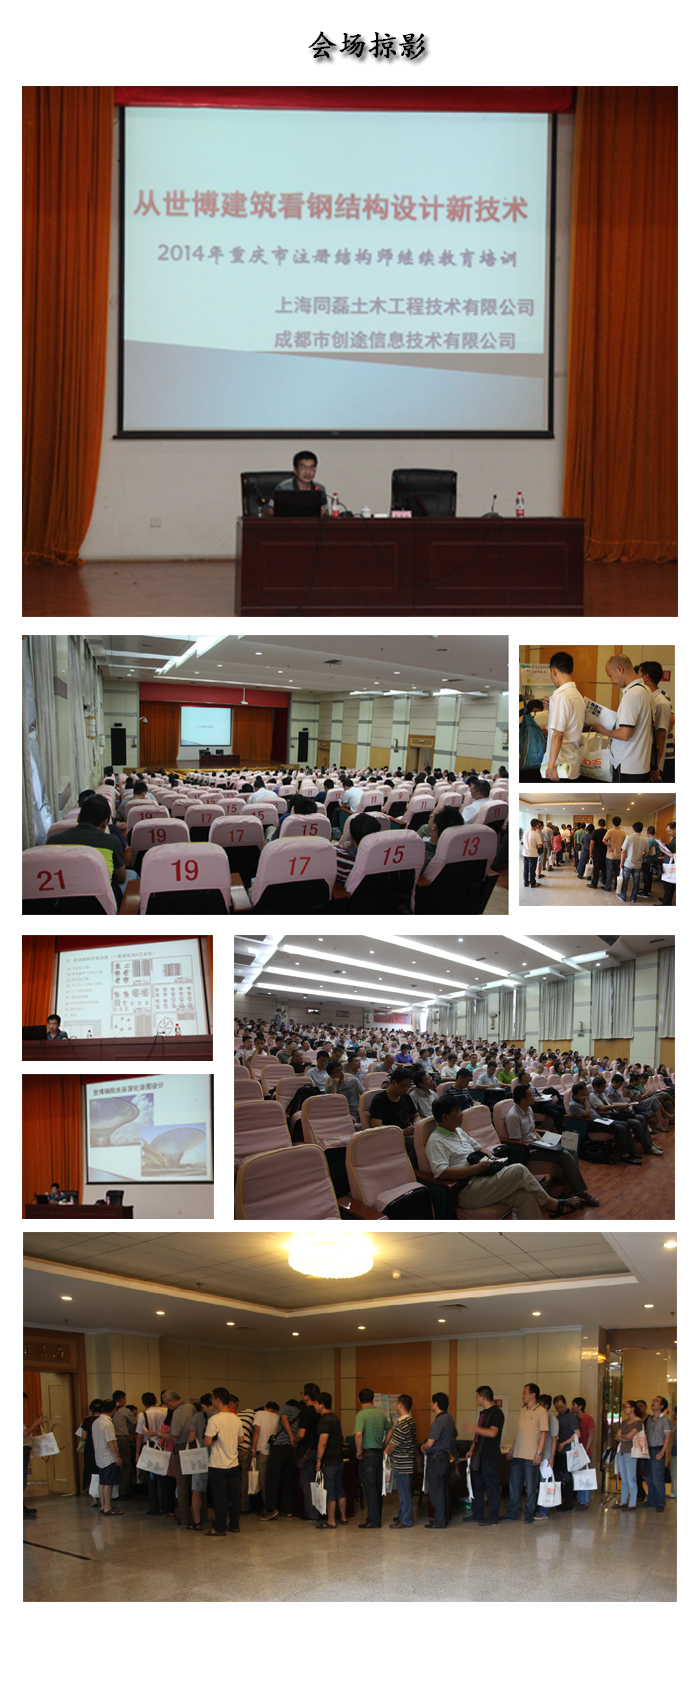 祝贺 “2014年重庆市注册结构师继续教育”技术交流讲座会议取得圆满成功